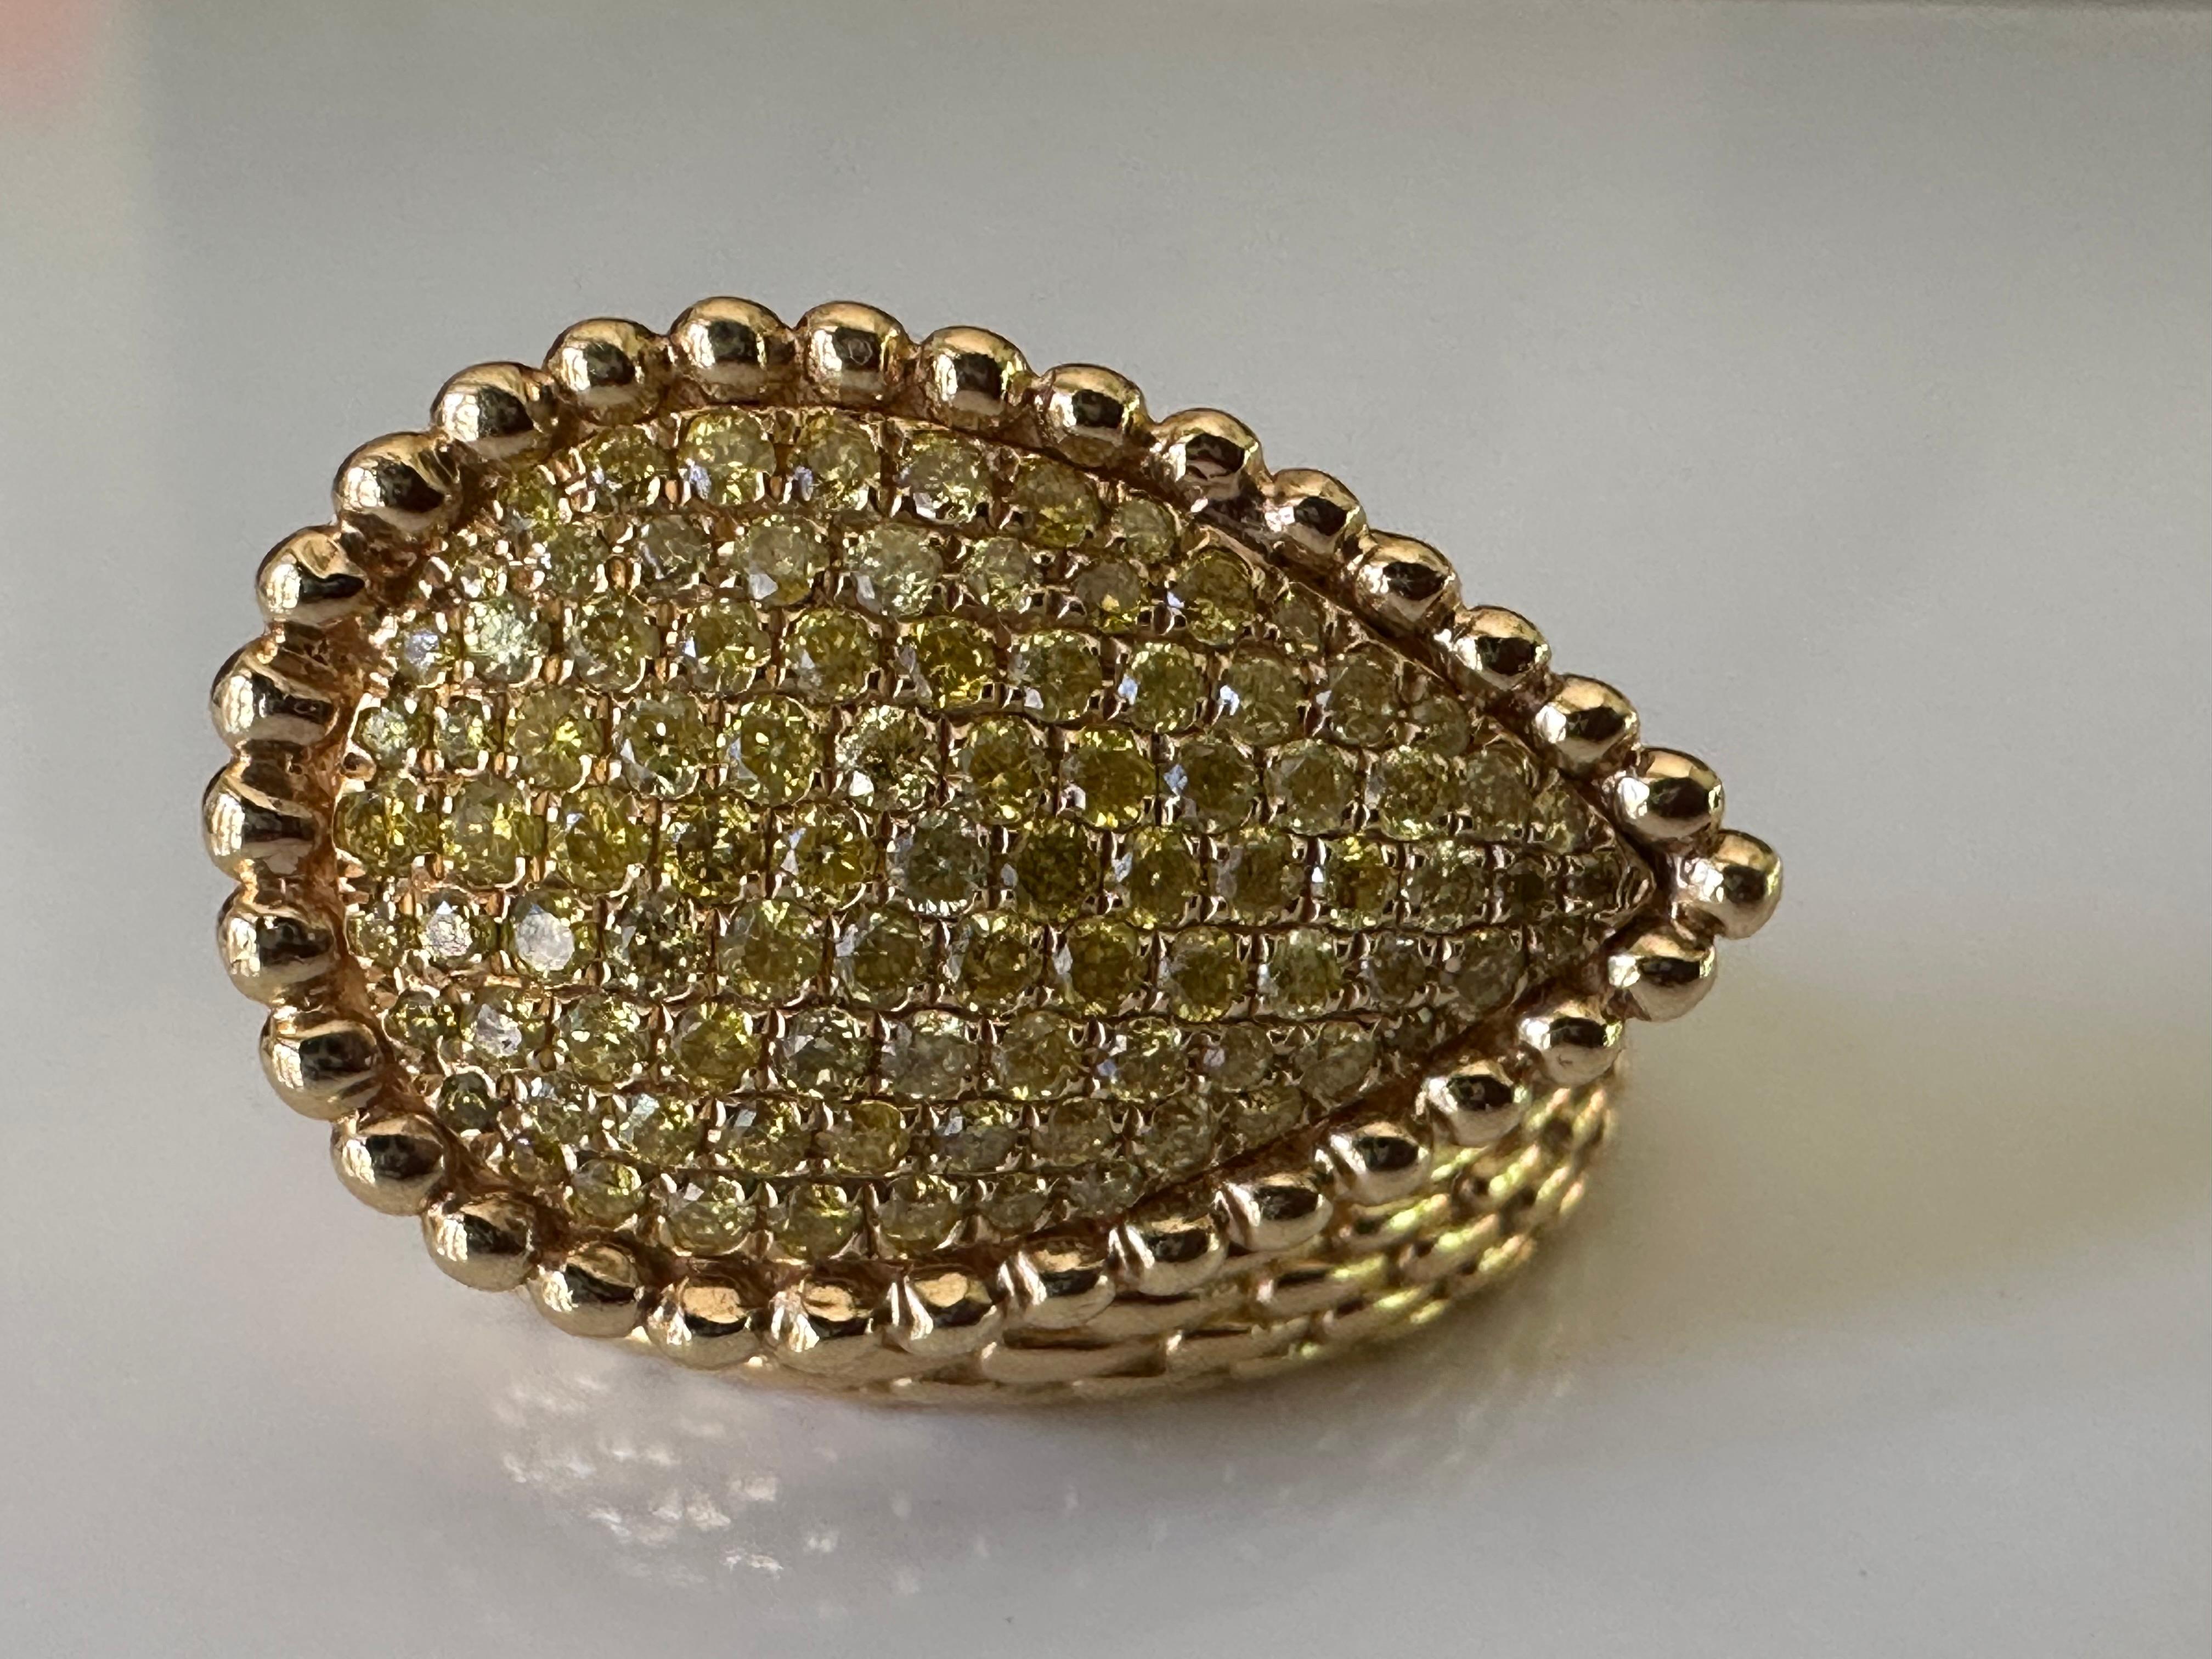 Dreiundneunzig natürliche, gelbe, runde Diamanten im Brillantschliff funkeln in diesem einzigartigen, modernen, schlangenförmigen Ring aus glänzendem, stark strukturiertem 18 Karat Gelbgold. Die in Pflaster gefassten Diamanten haben insgesamt etwa